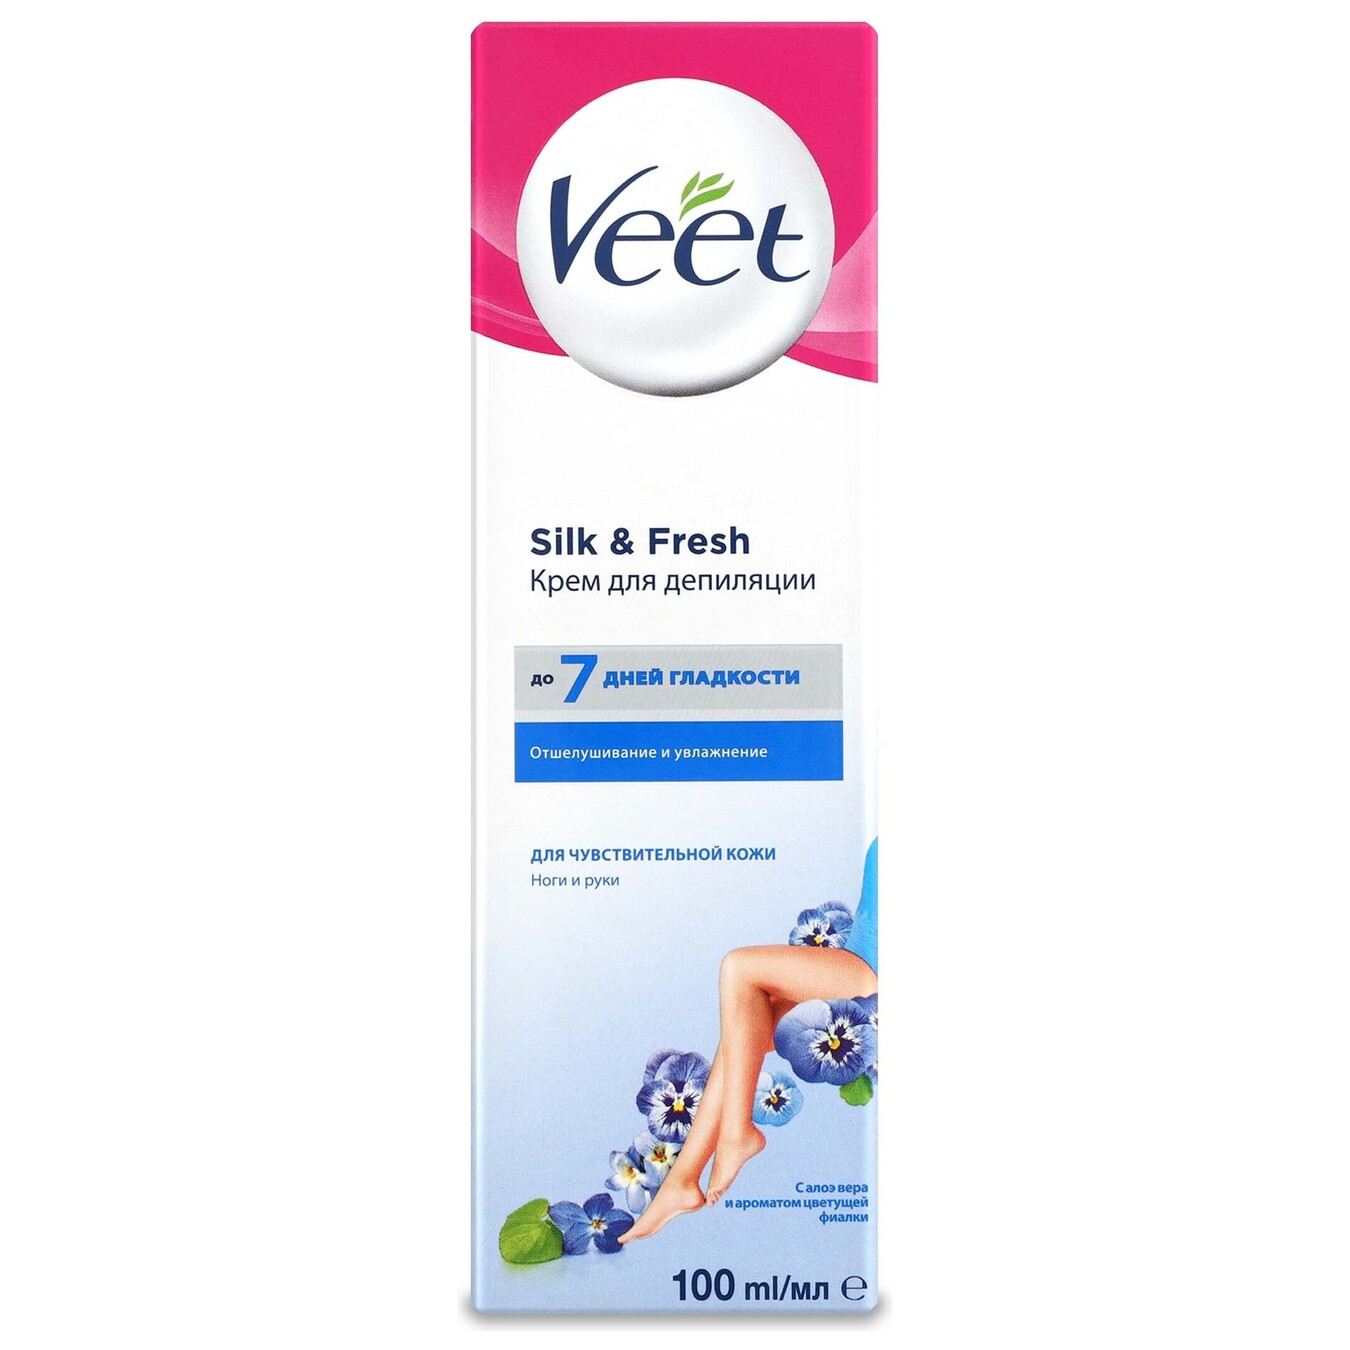 Cream for depilation Veet in the range of 100 ml